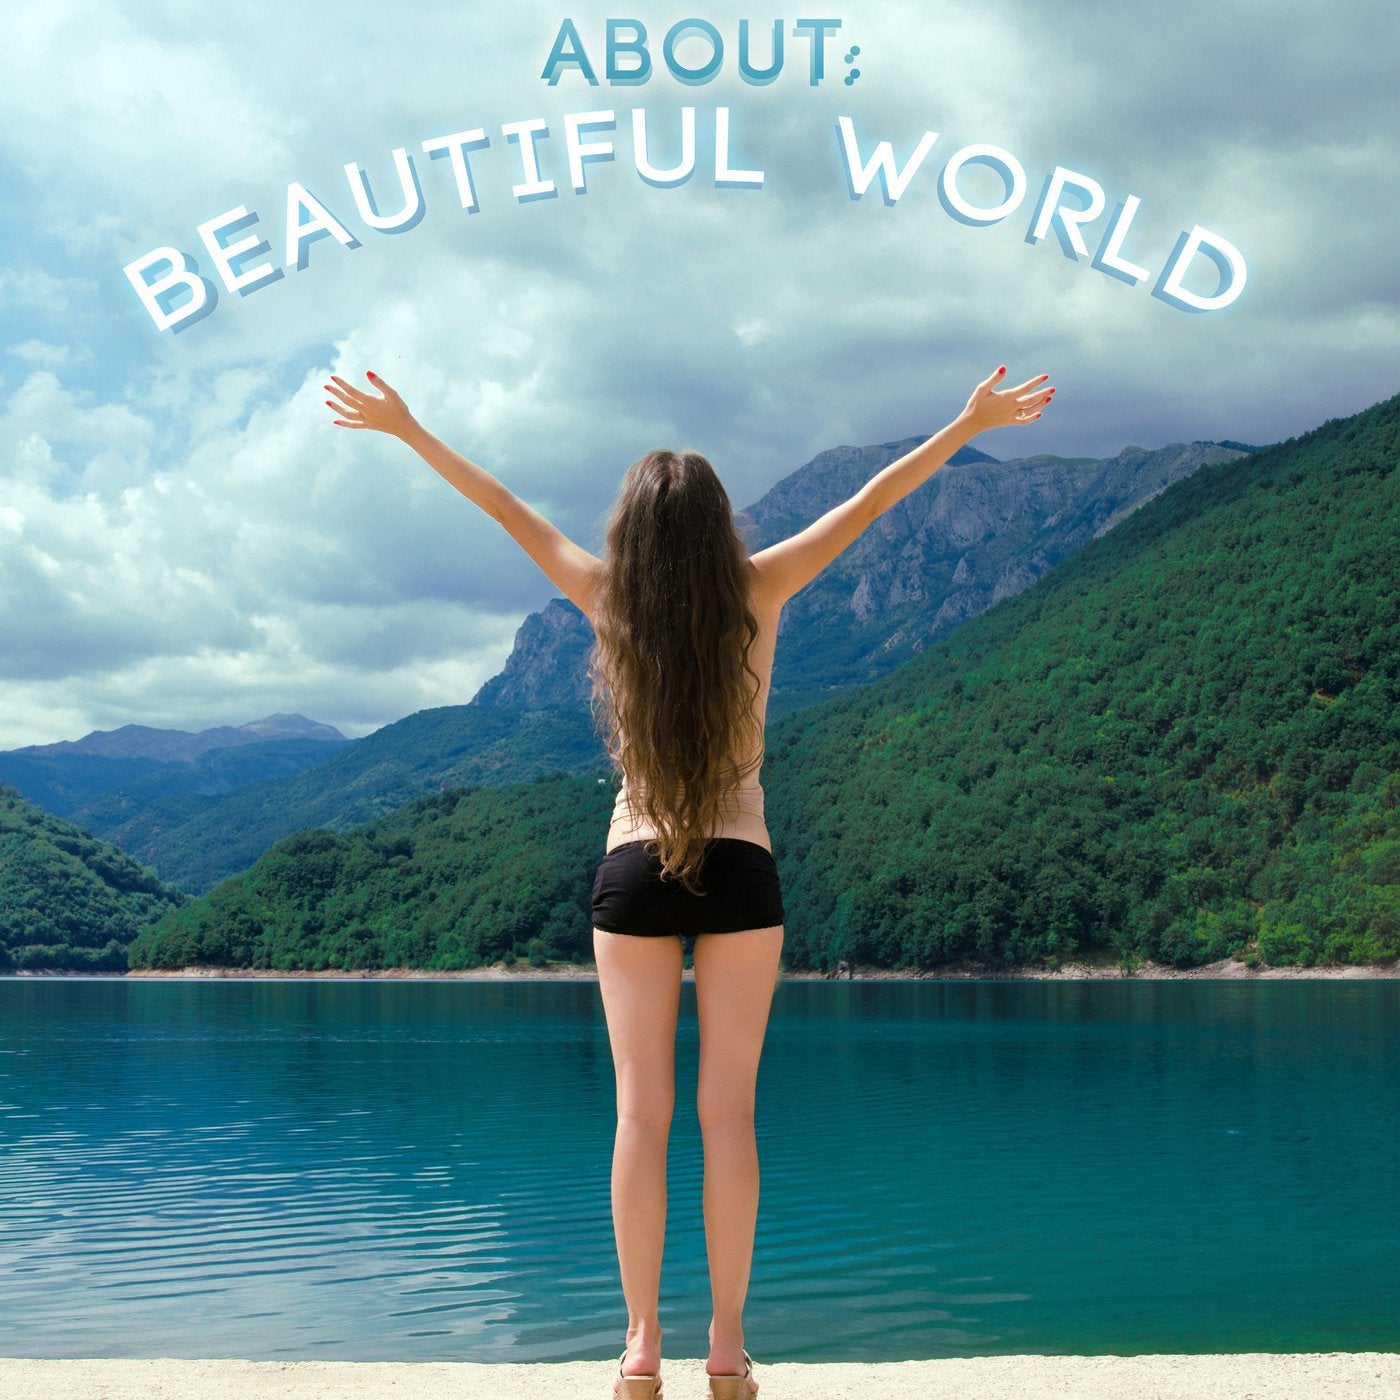 About: Beautiful World